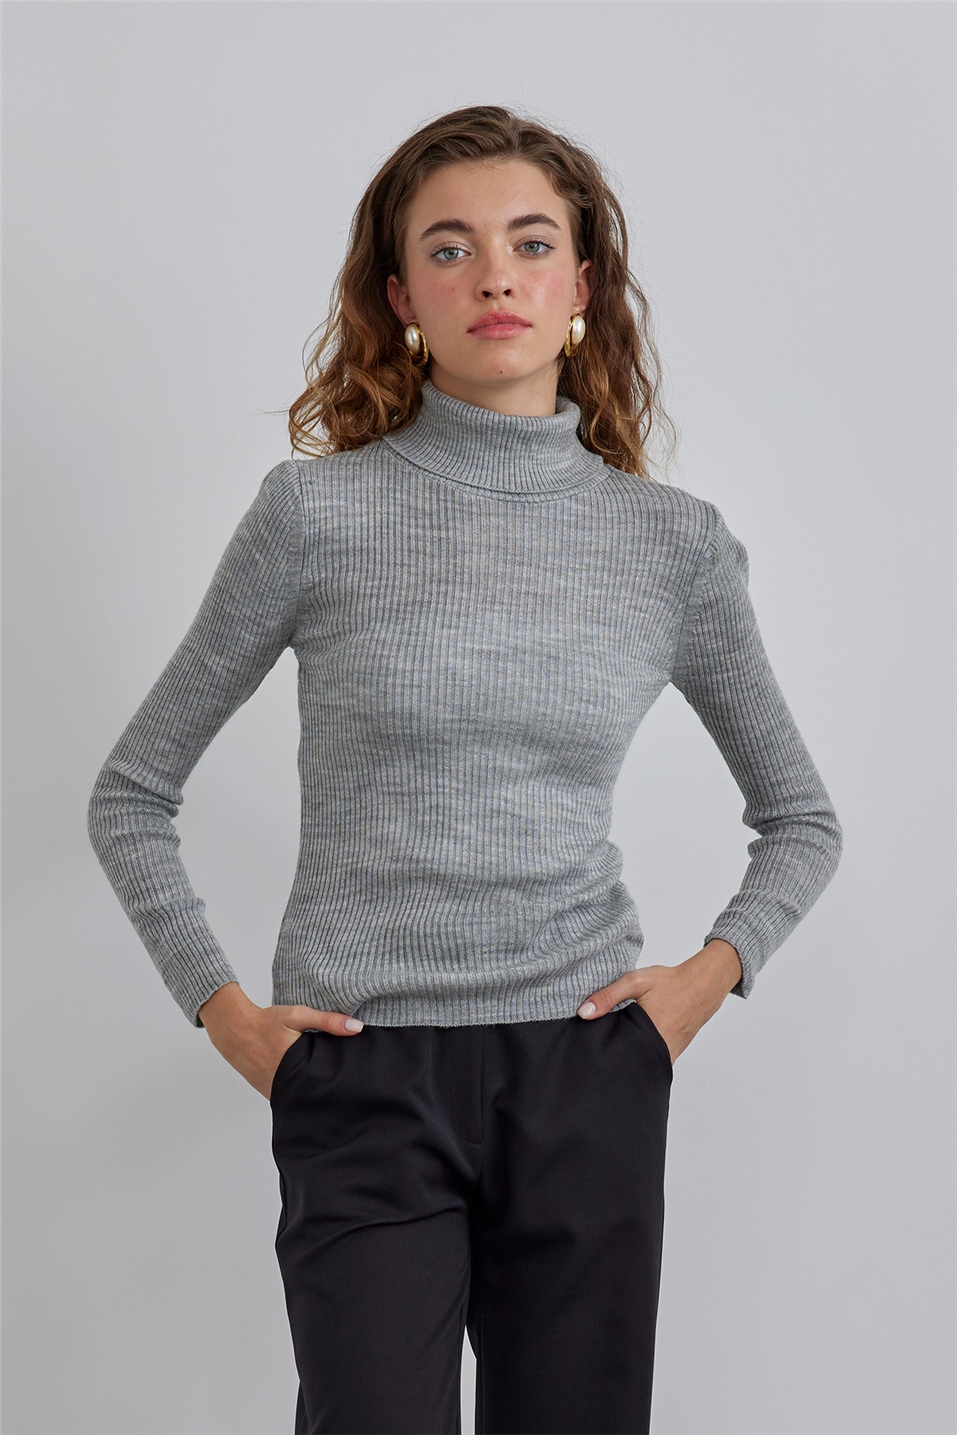 Grey Turtleneck Knitwear Sweater